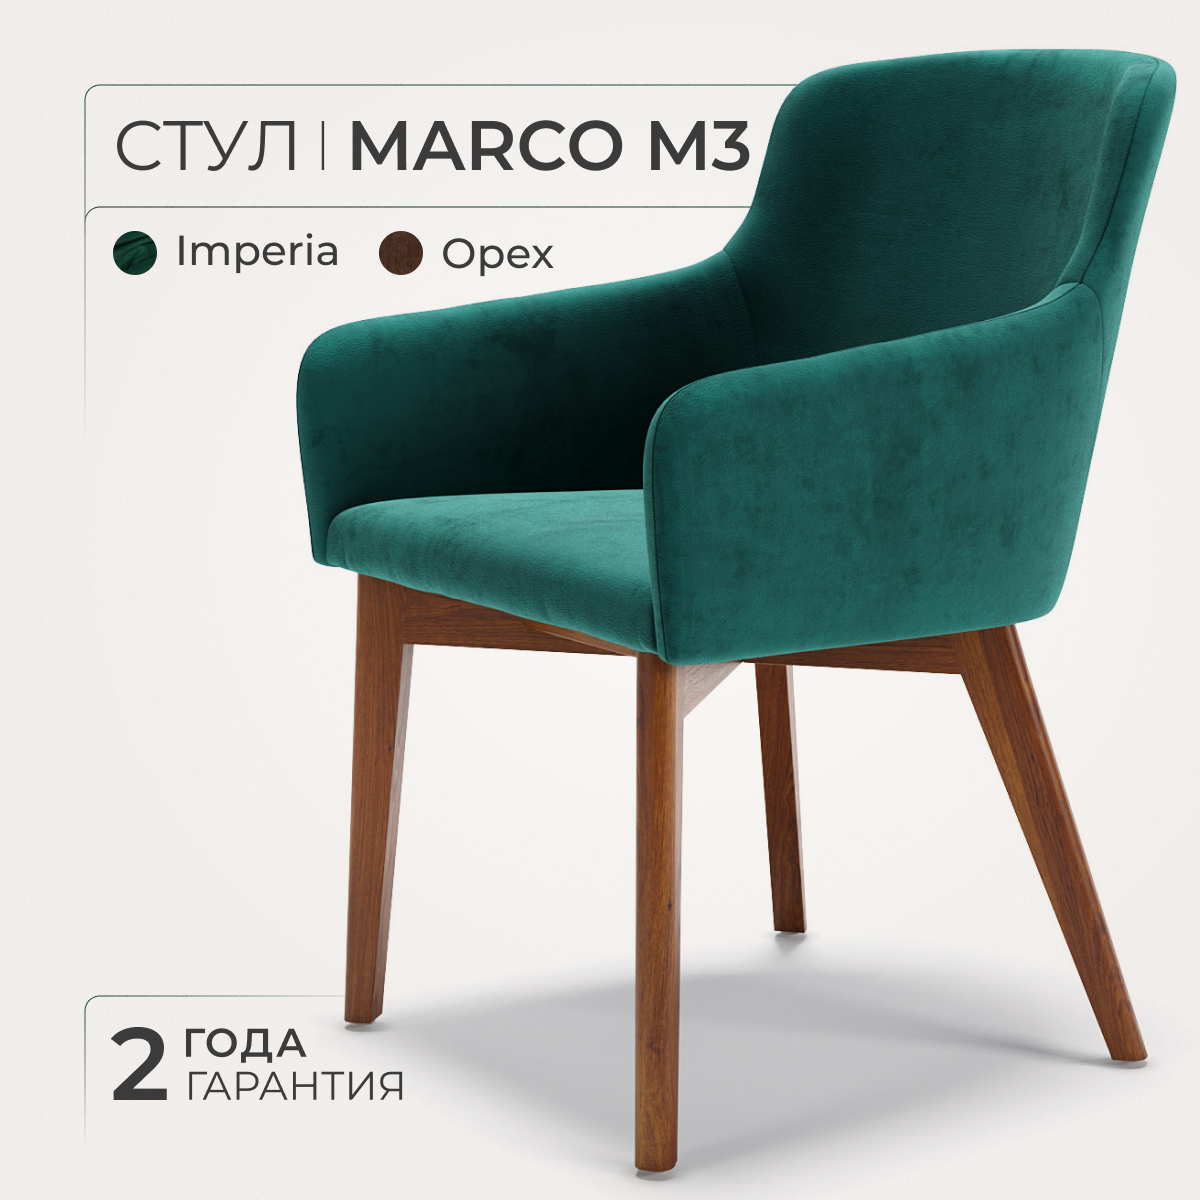 ANNI HAUS стул Marco M3, массив бука, велюр, цвет: темный орех/зеленый